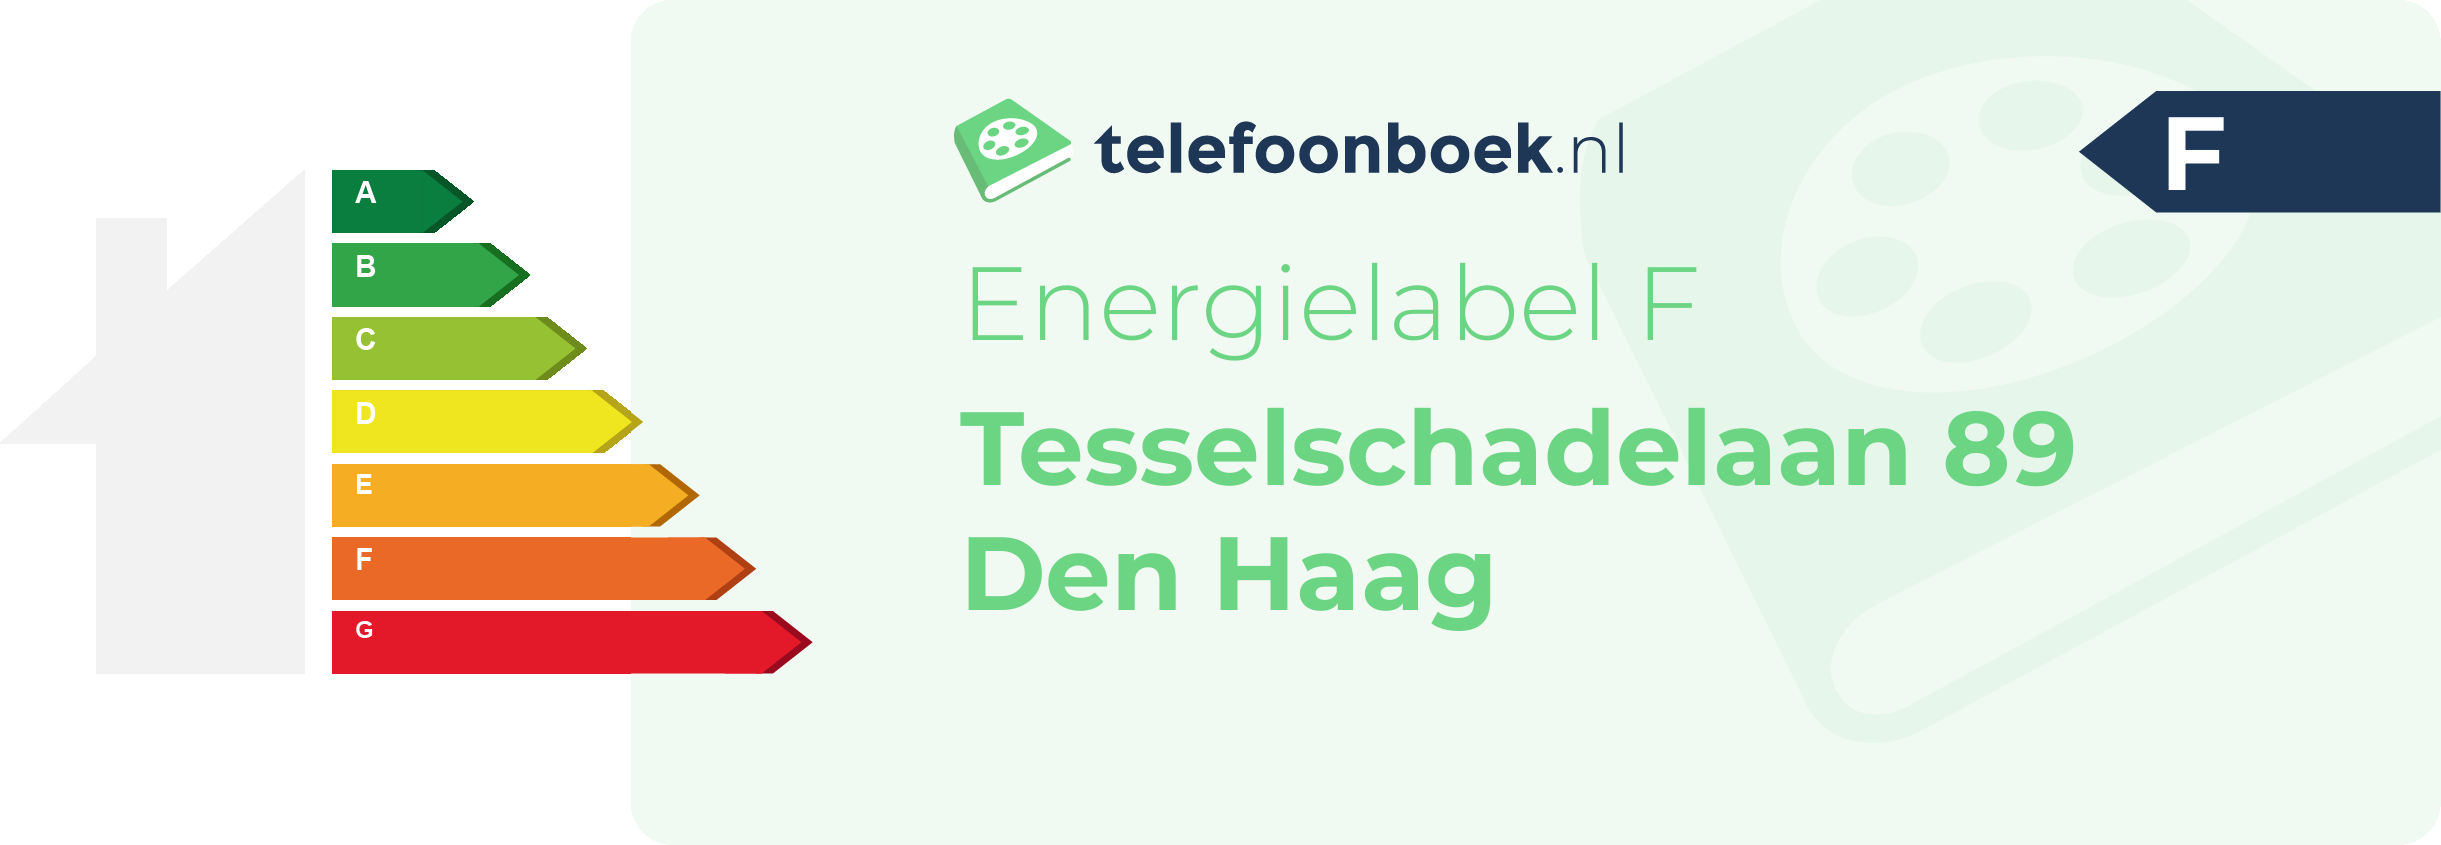 Energielabel Tesselschadelaan 89 Den Haag